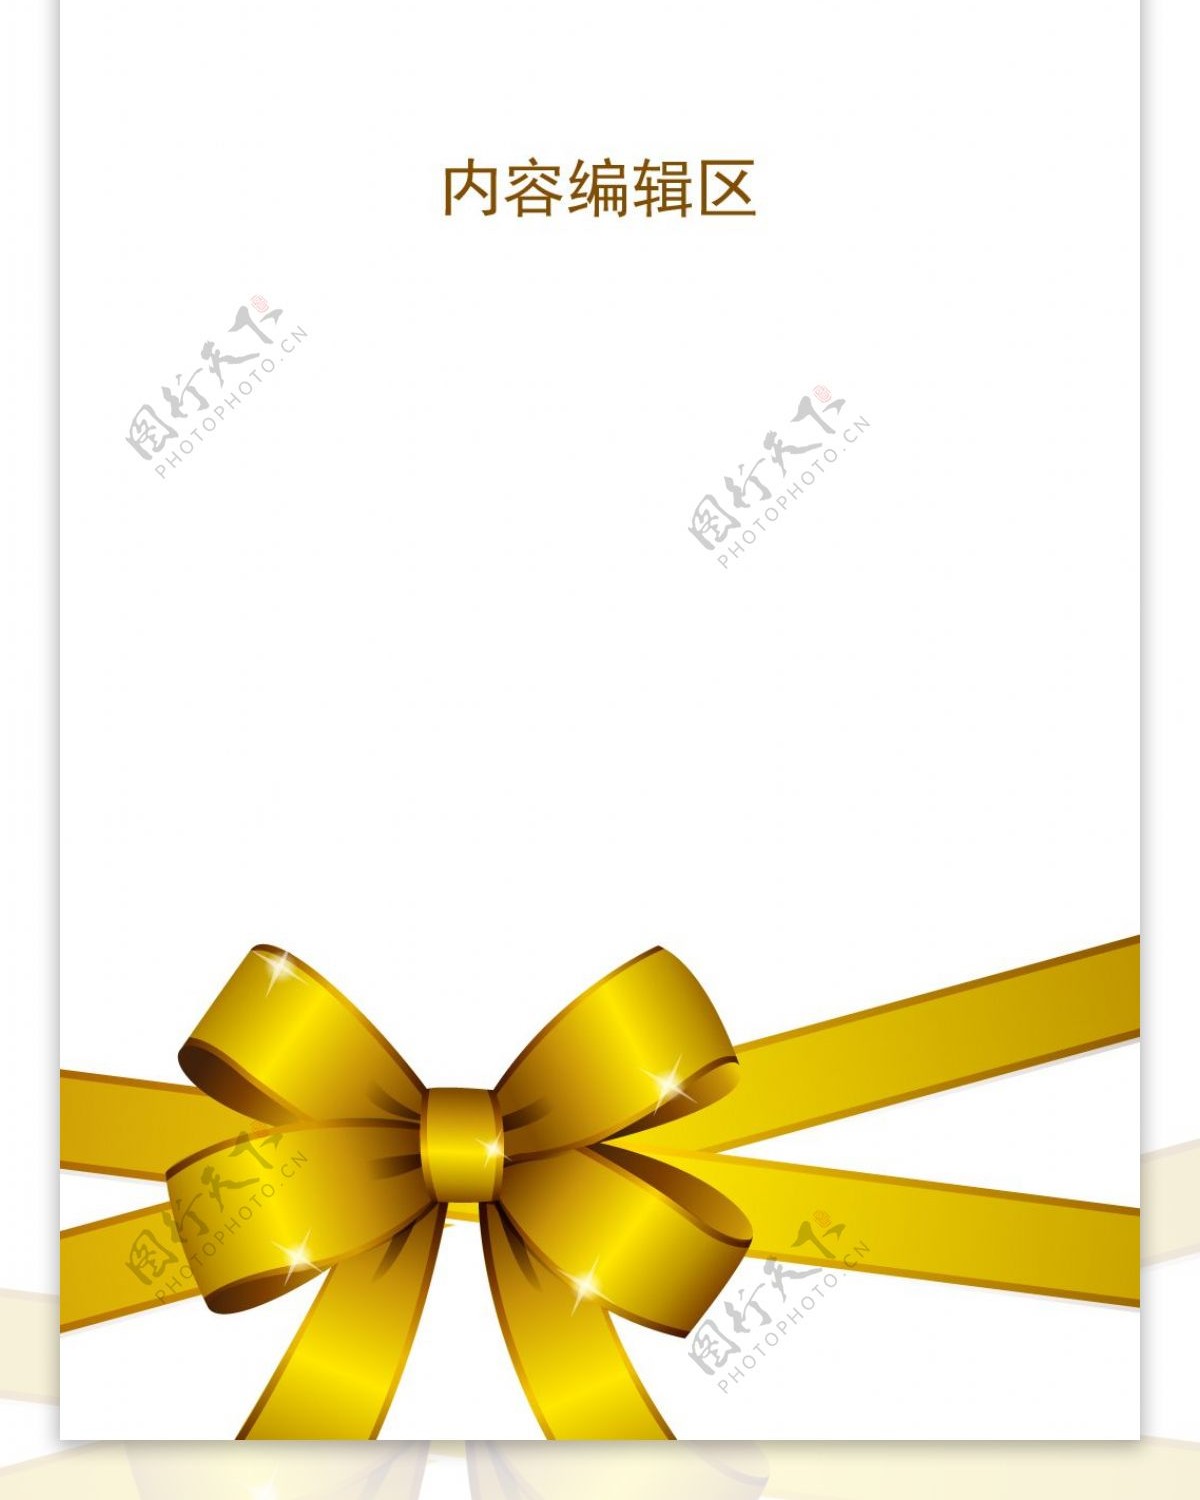 金色中国结展架设计模板素材画面